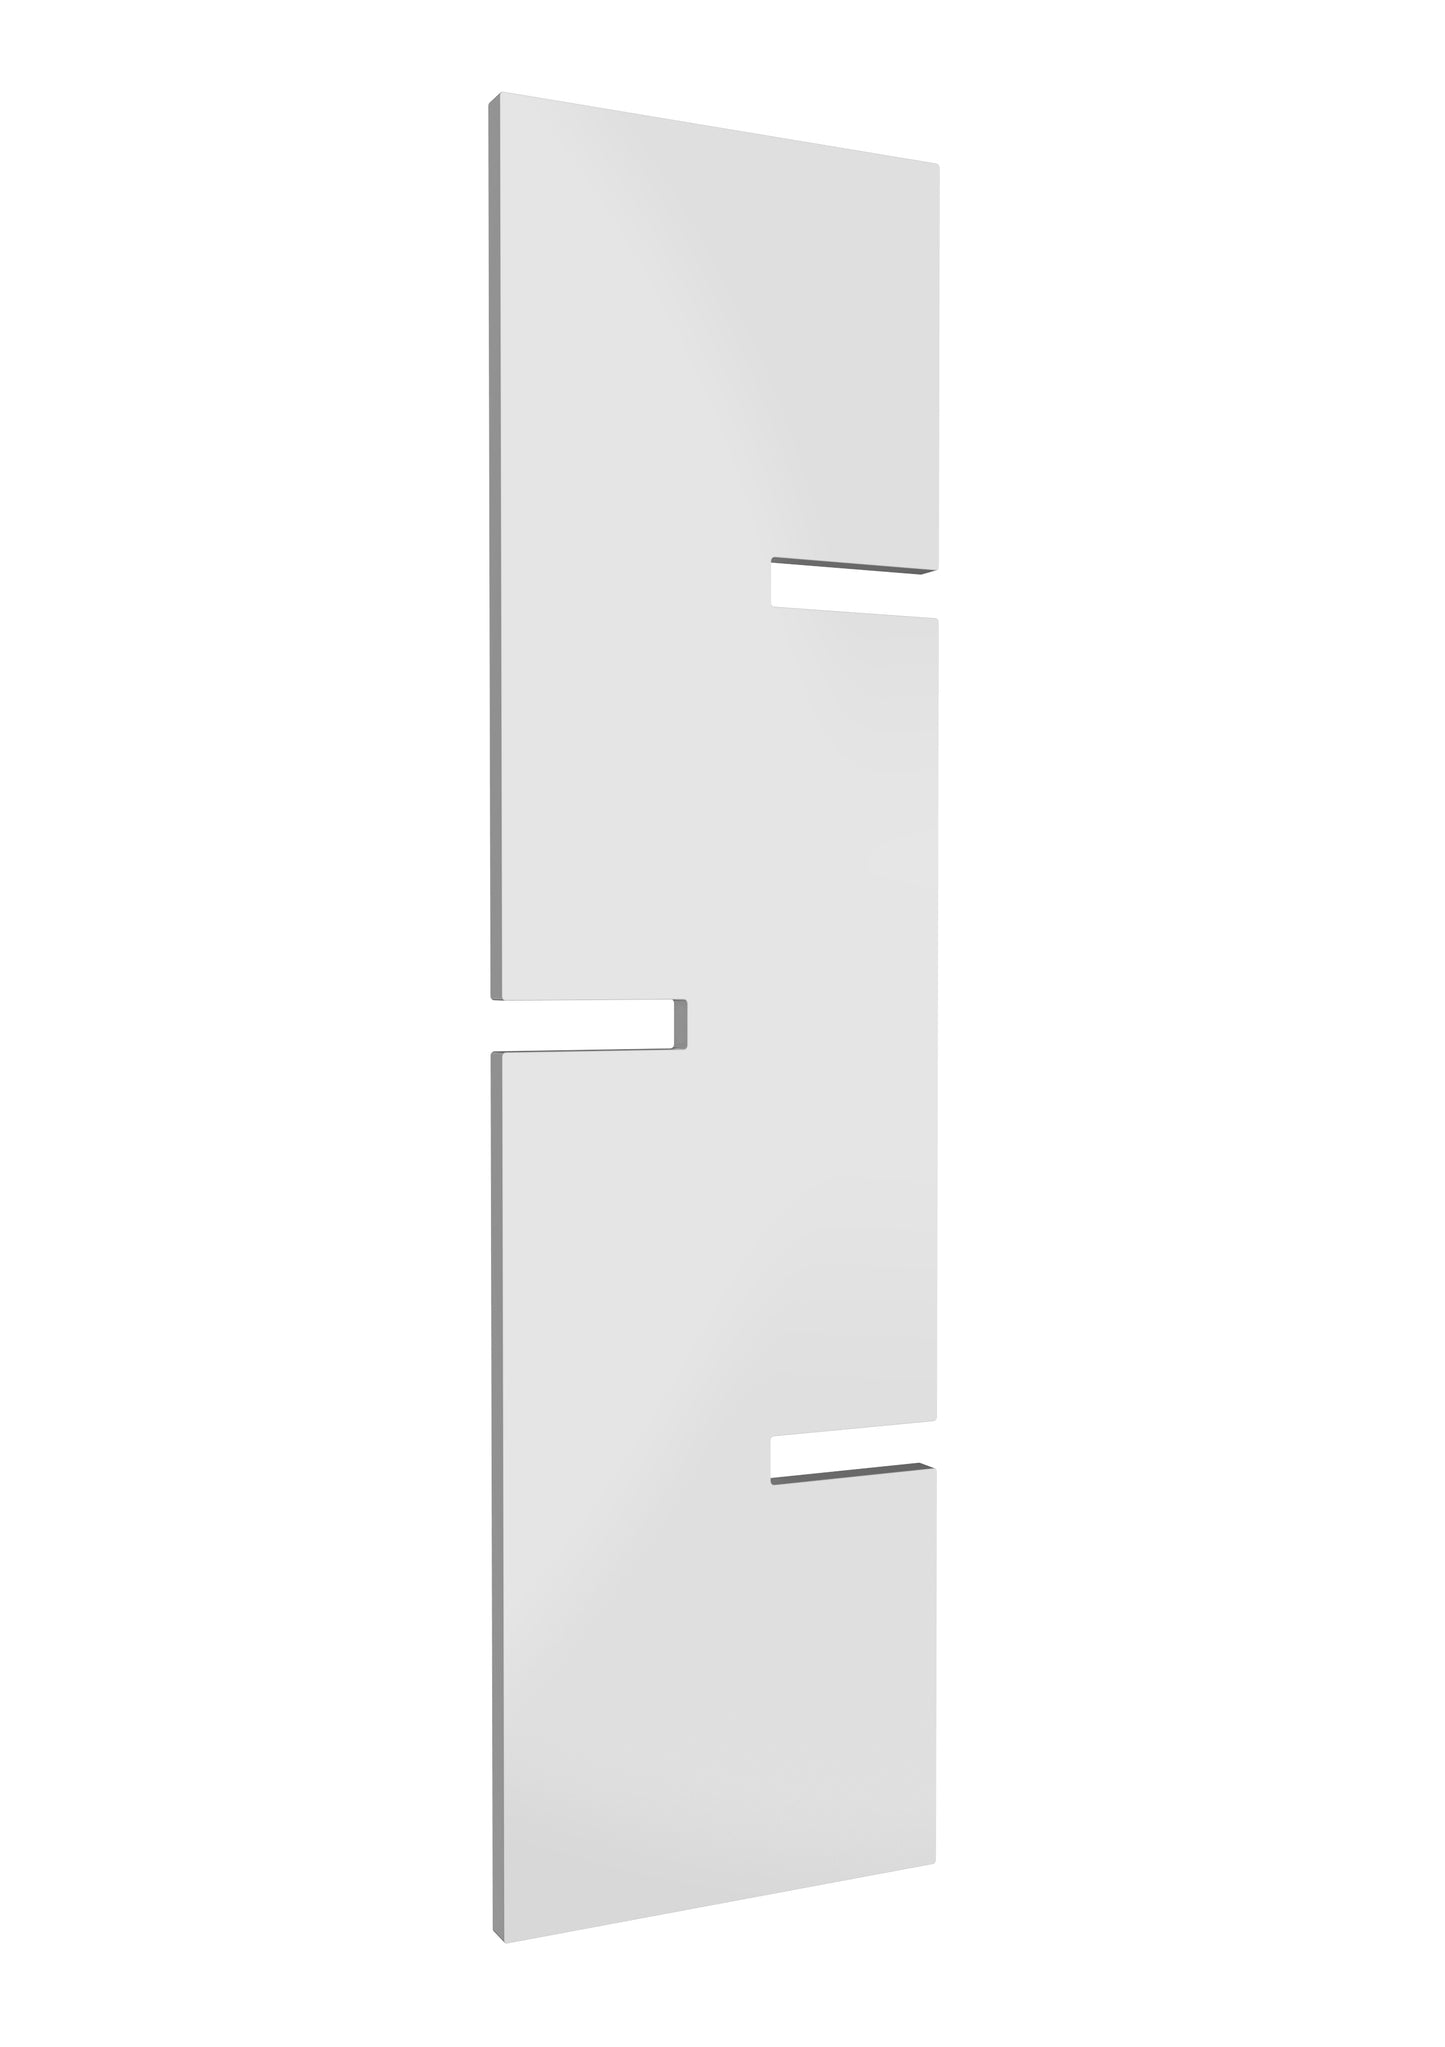 Fiore Vertical Designer Radiator - 1790mm Tall - White - Various Sizes